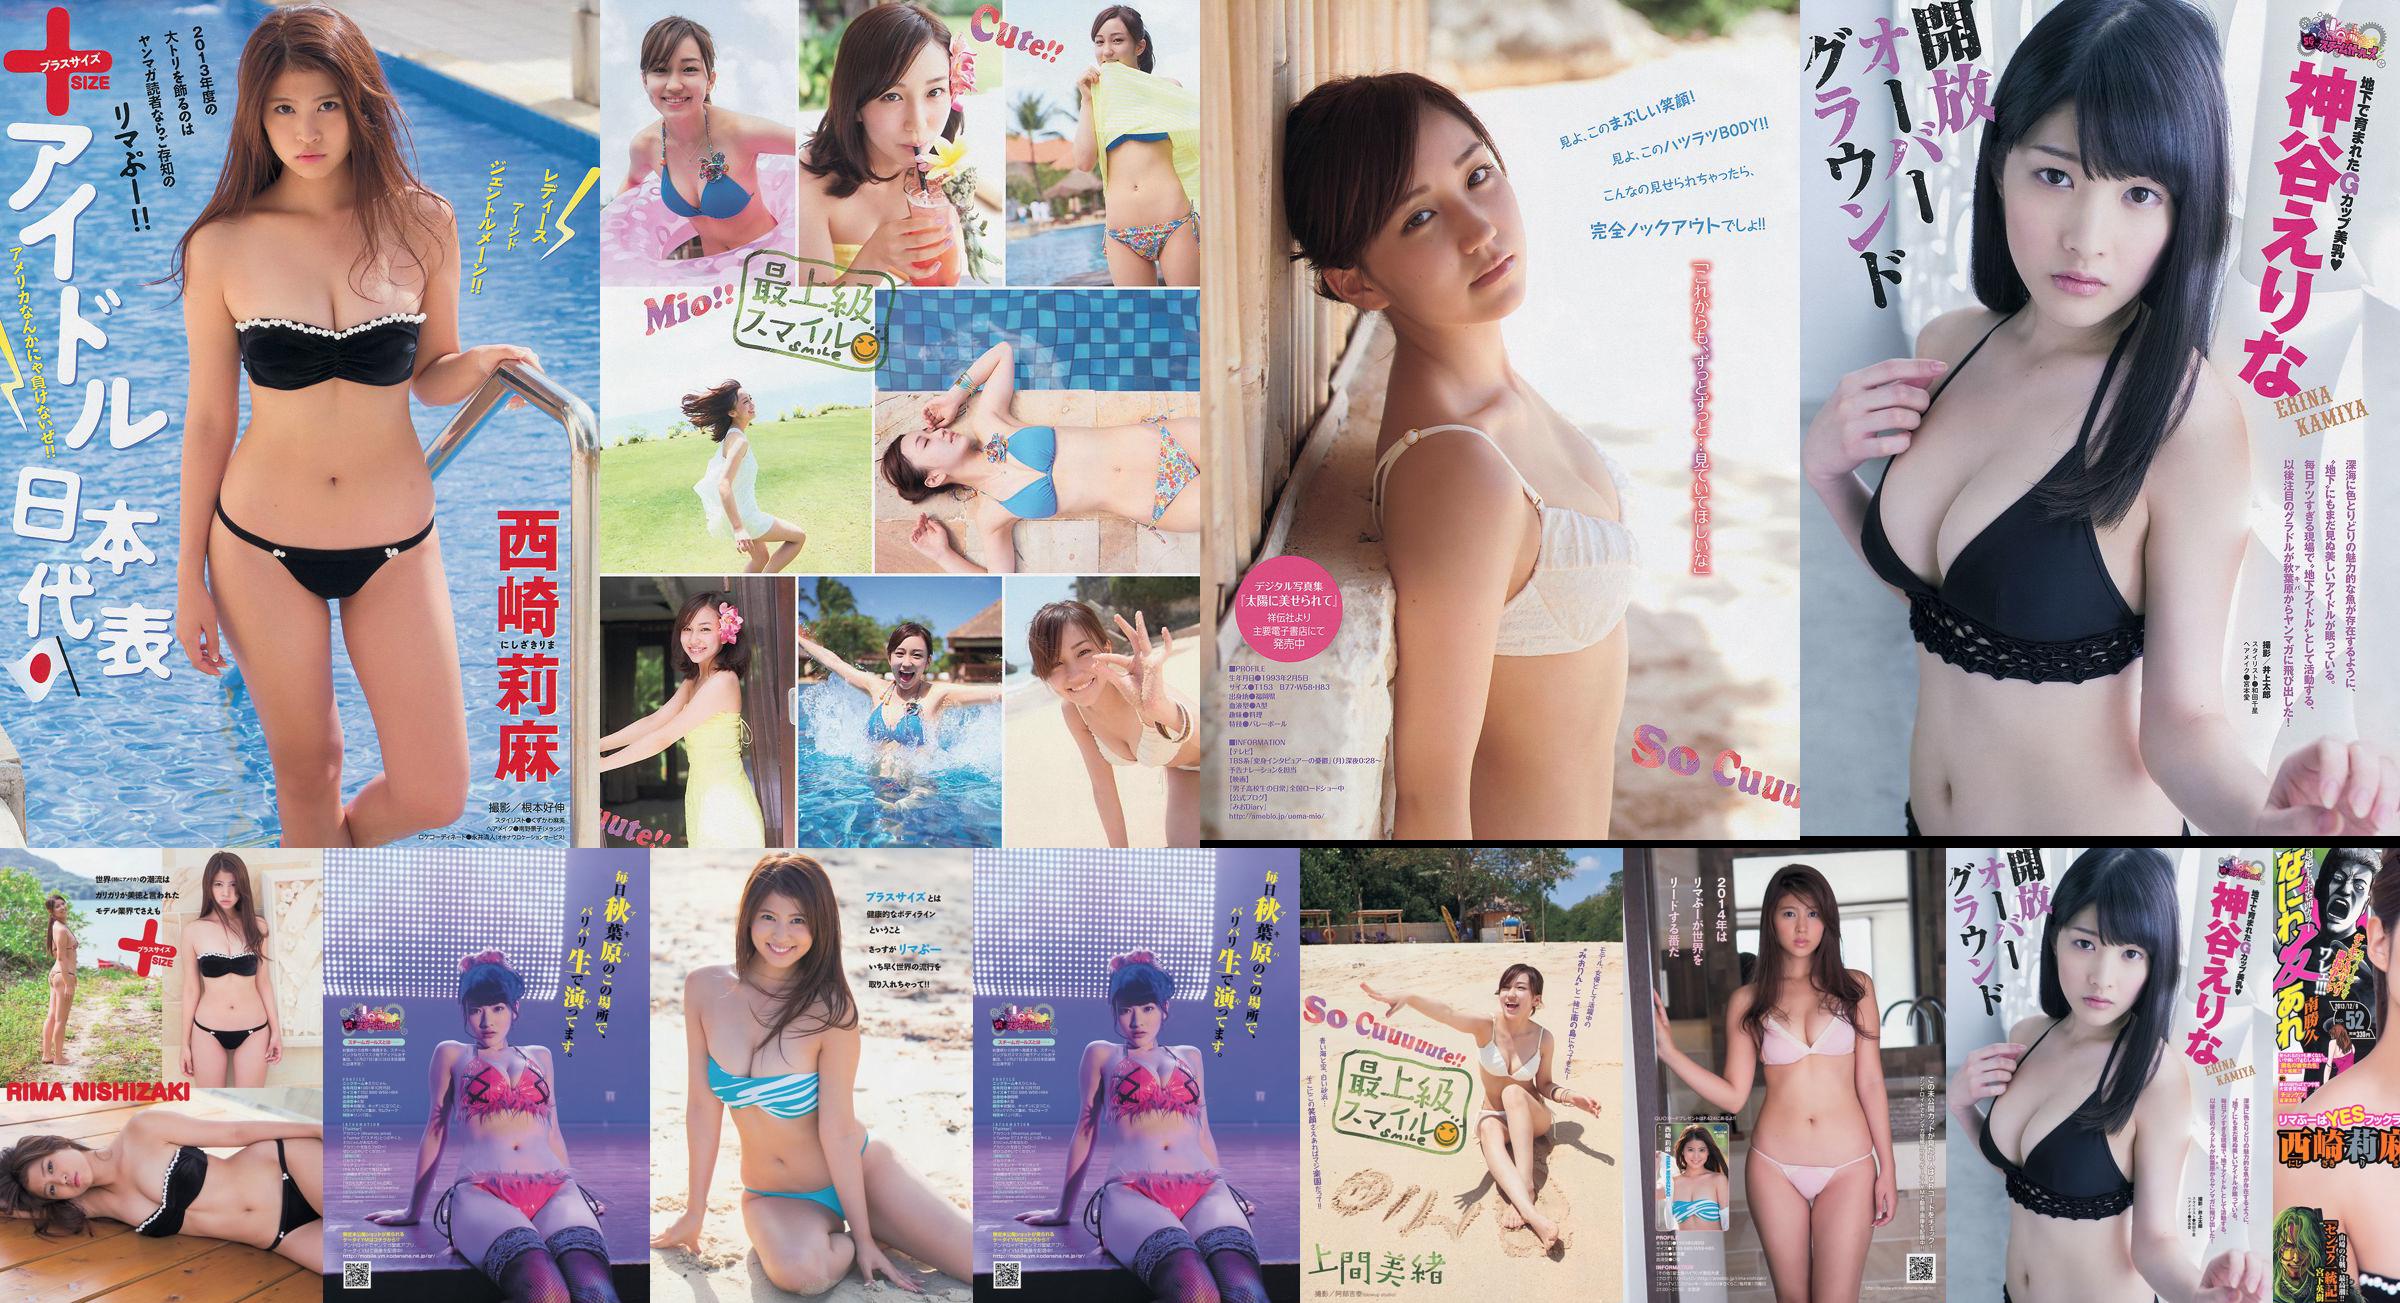 [นิตยสาร Young] Rima Nishizaki Mio Uema Erina Kamiya 2013 No.52 Photo Moshi No.413017 หน้า 1